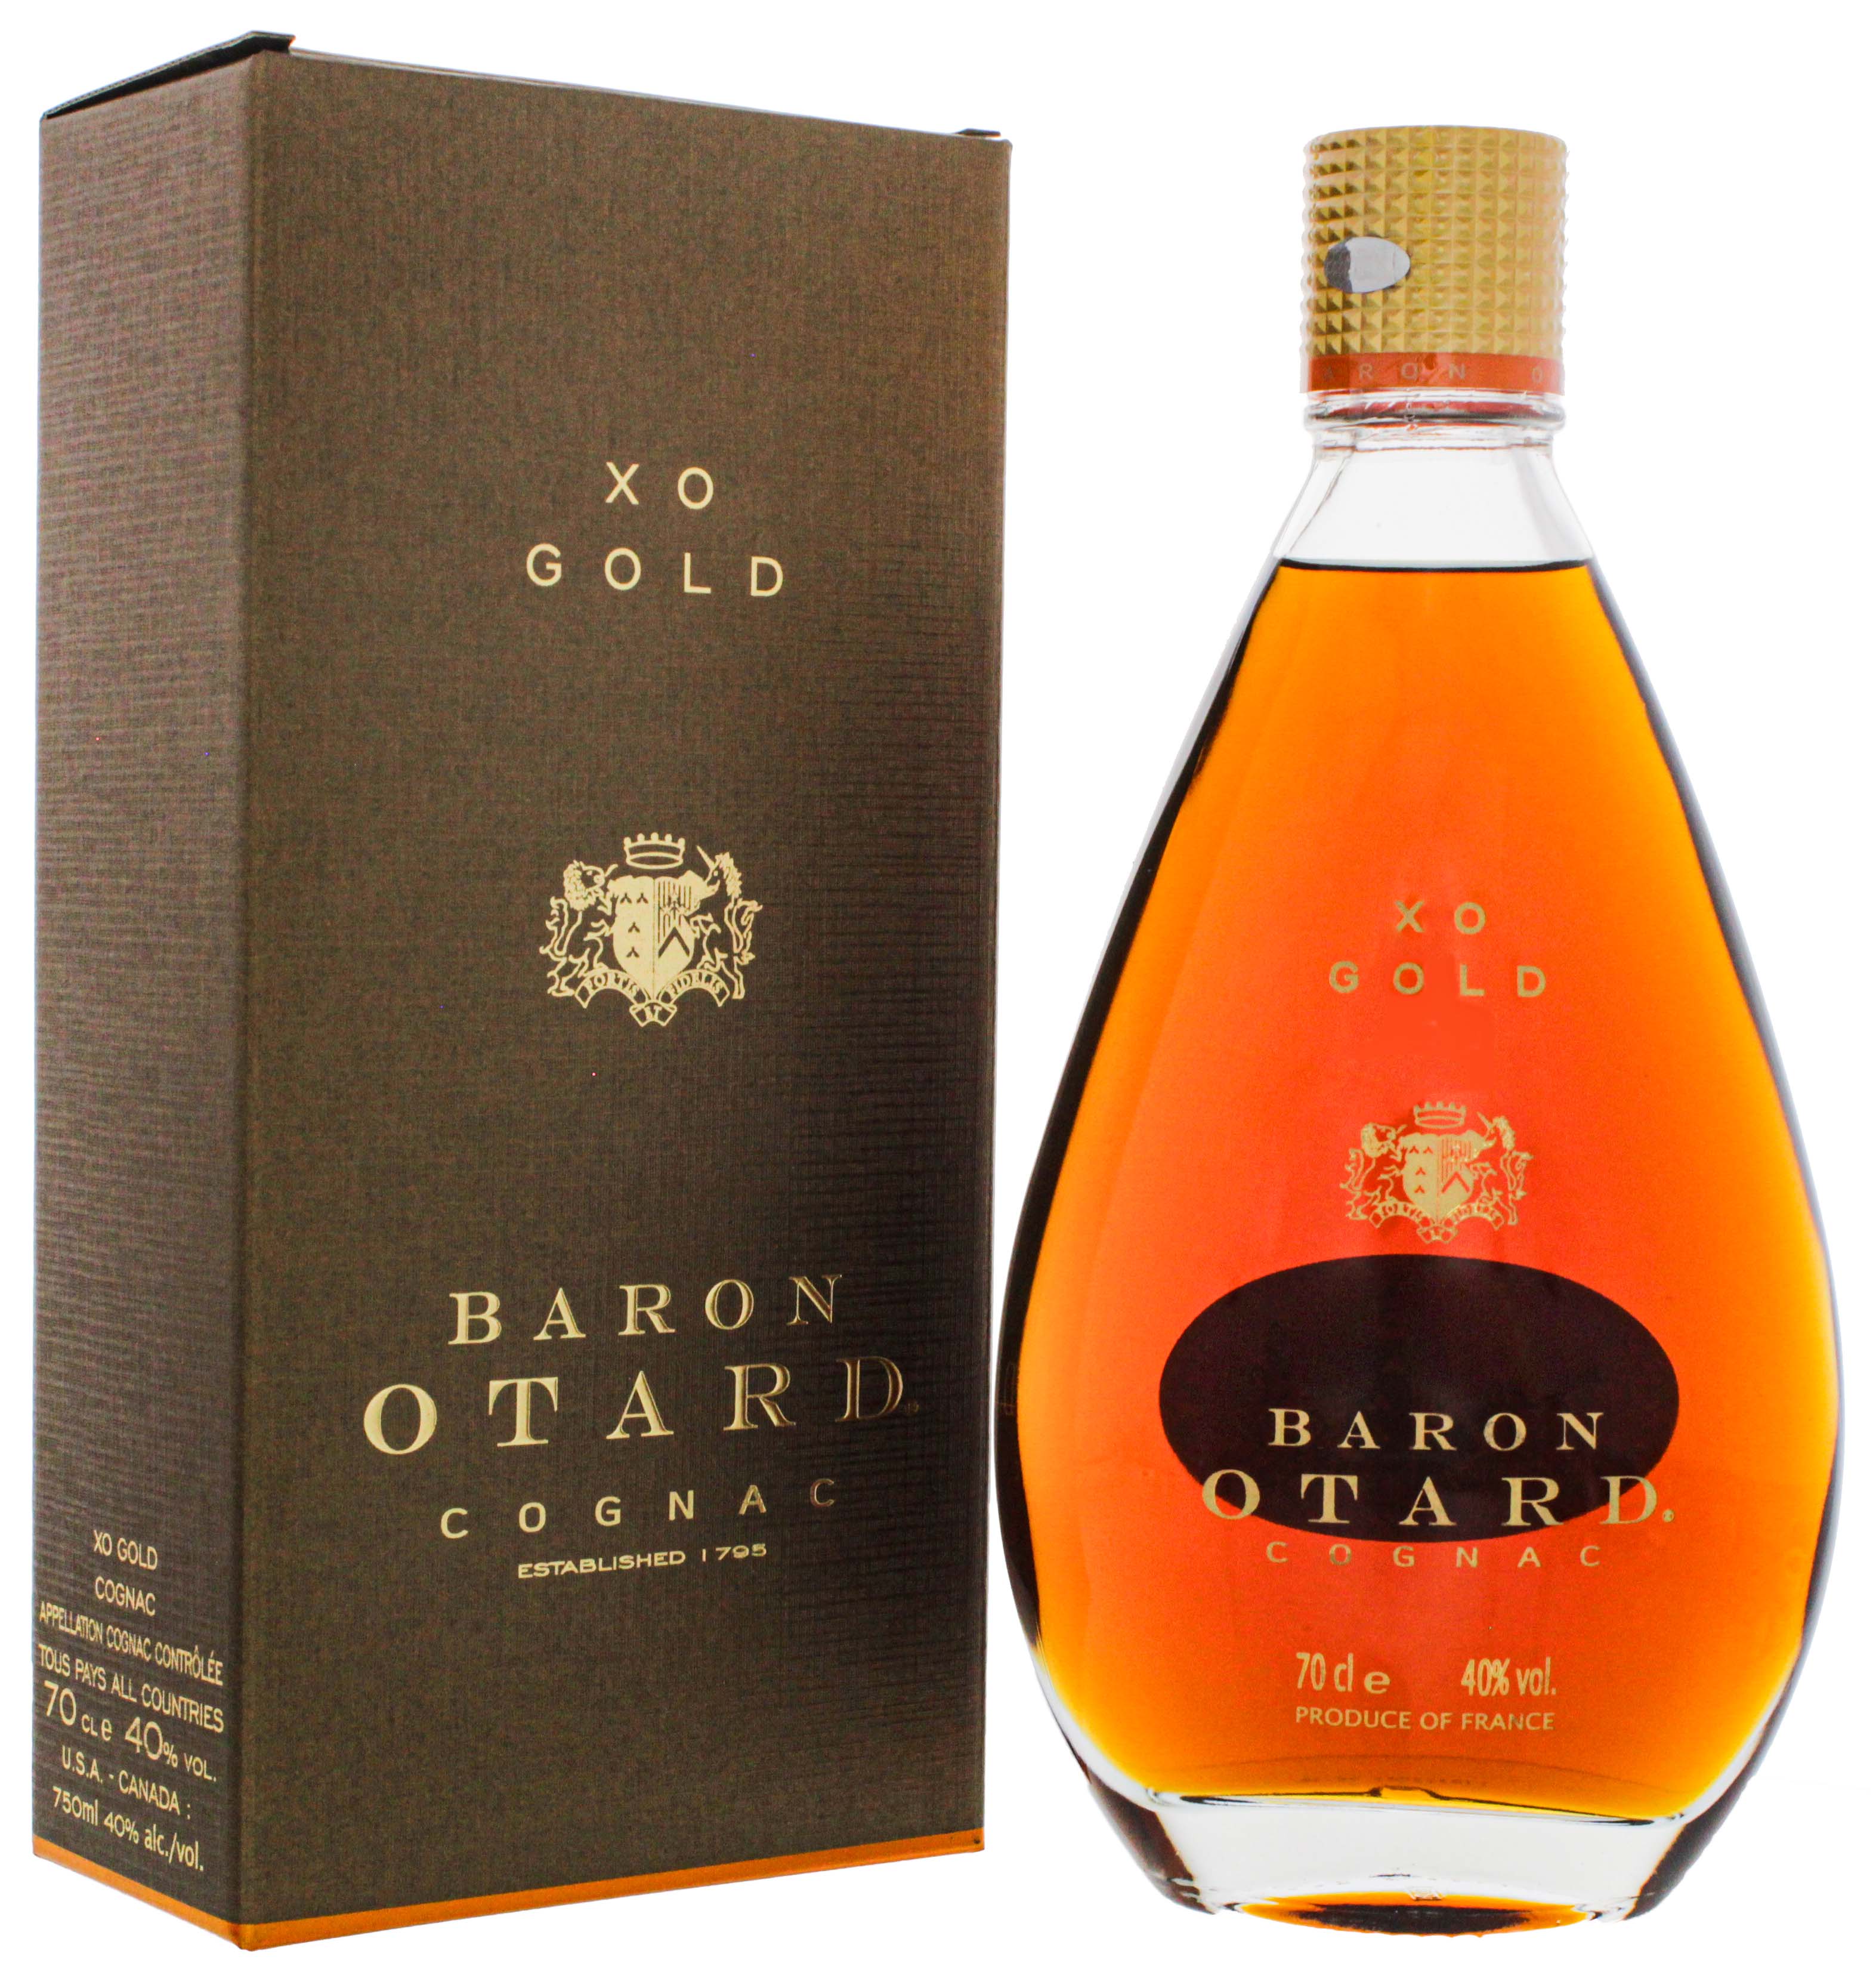 Otard Cognac XO Gold 0,7L jetzt kaufen im Drinkology Online Shop!